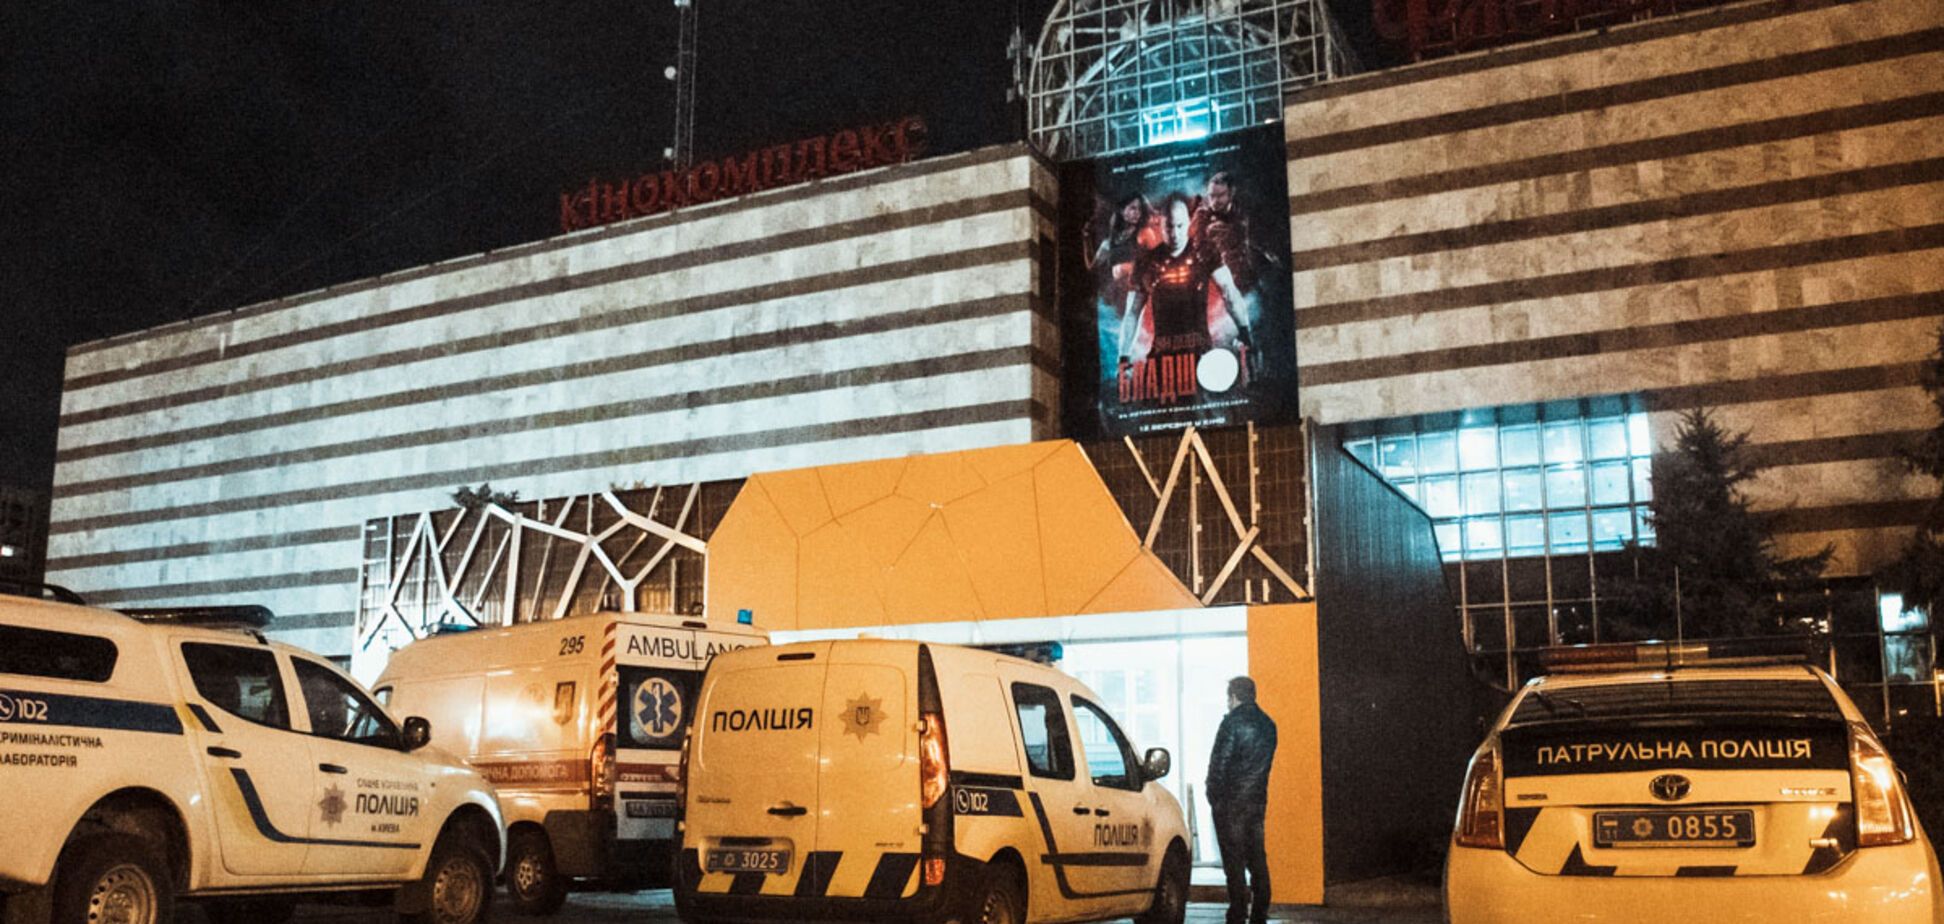 Директор киевского кинотеатра 'Флоренция' обнаружен мертвым: фото и видео с места событий